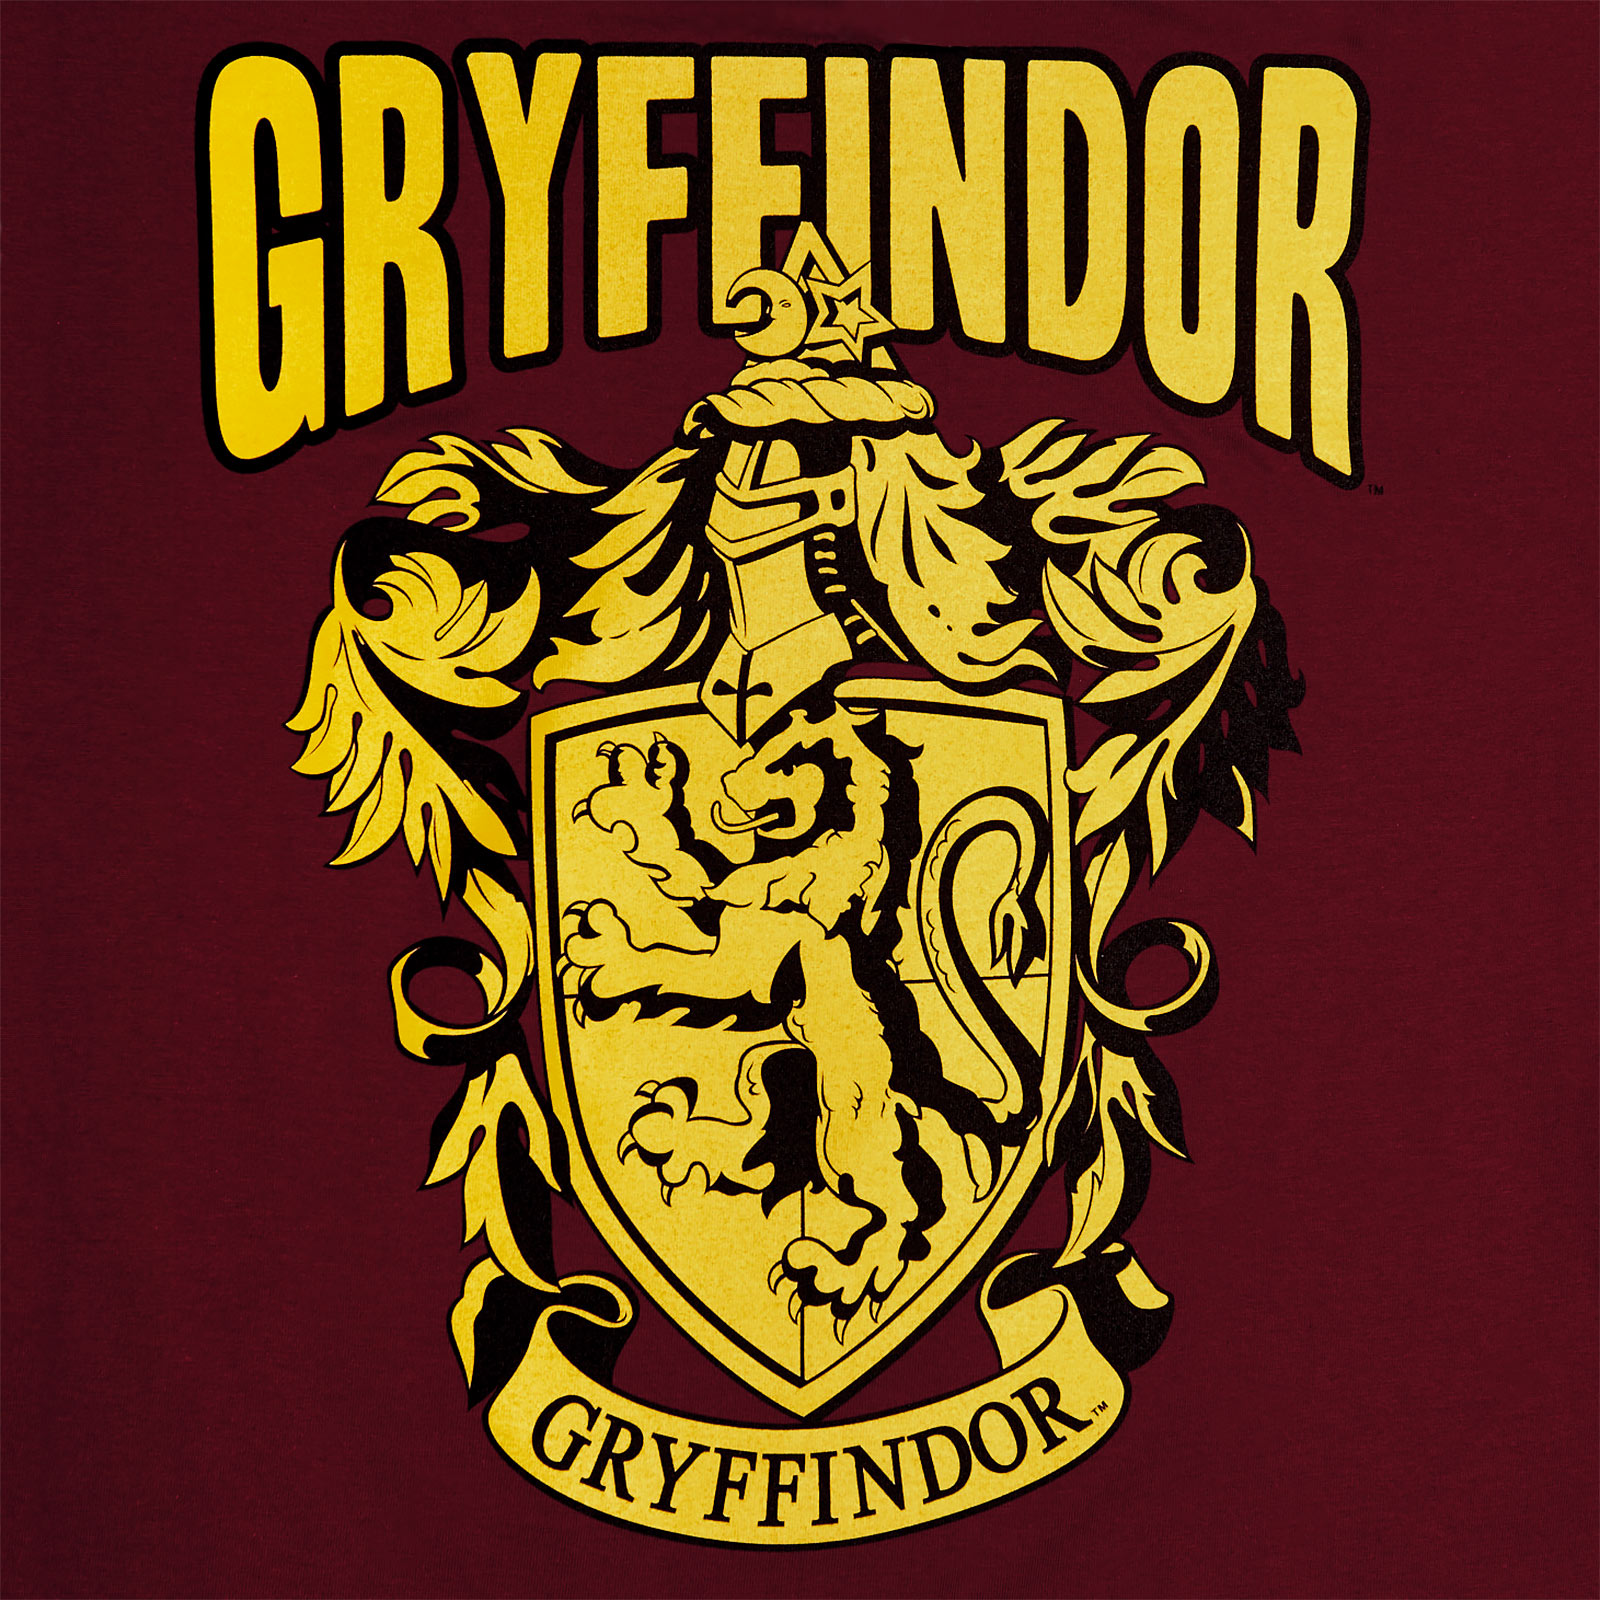 Harry Potter - Gryffindor Crest T-Shirt red